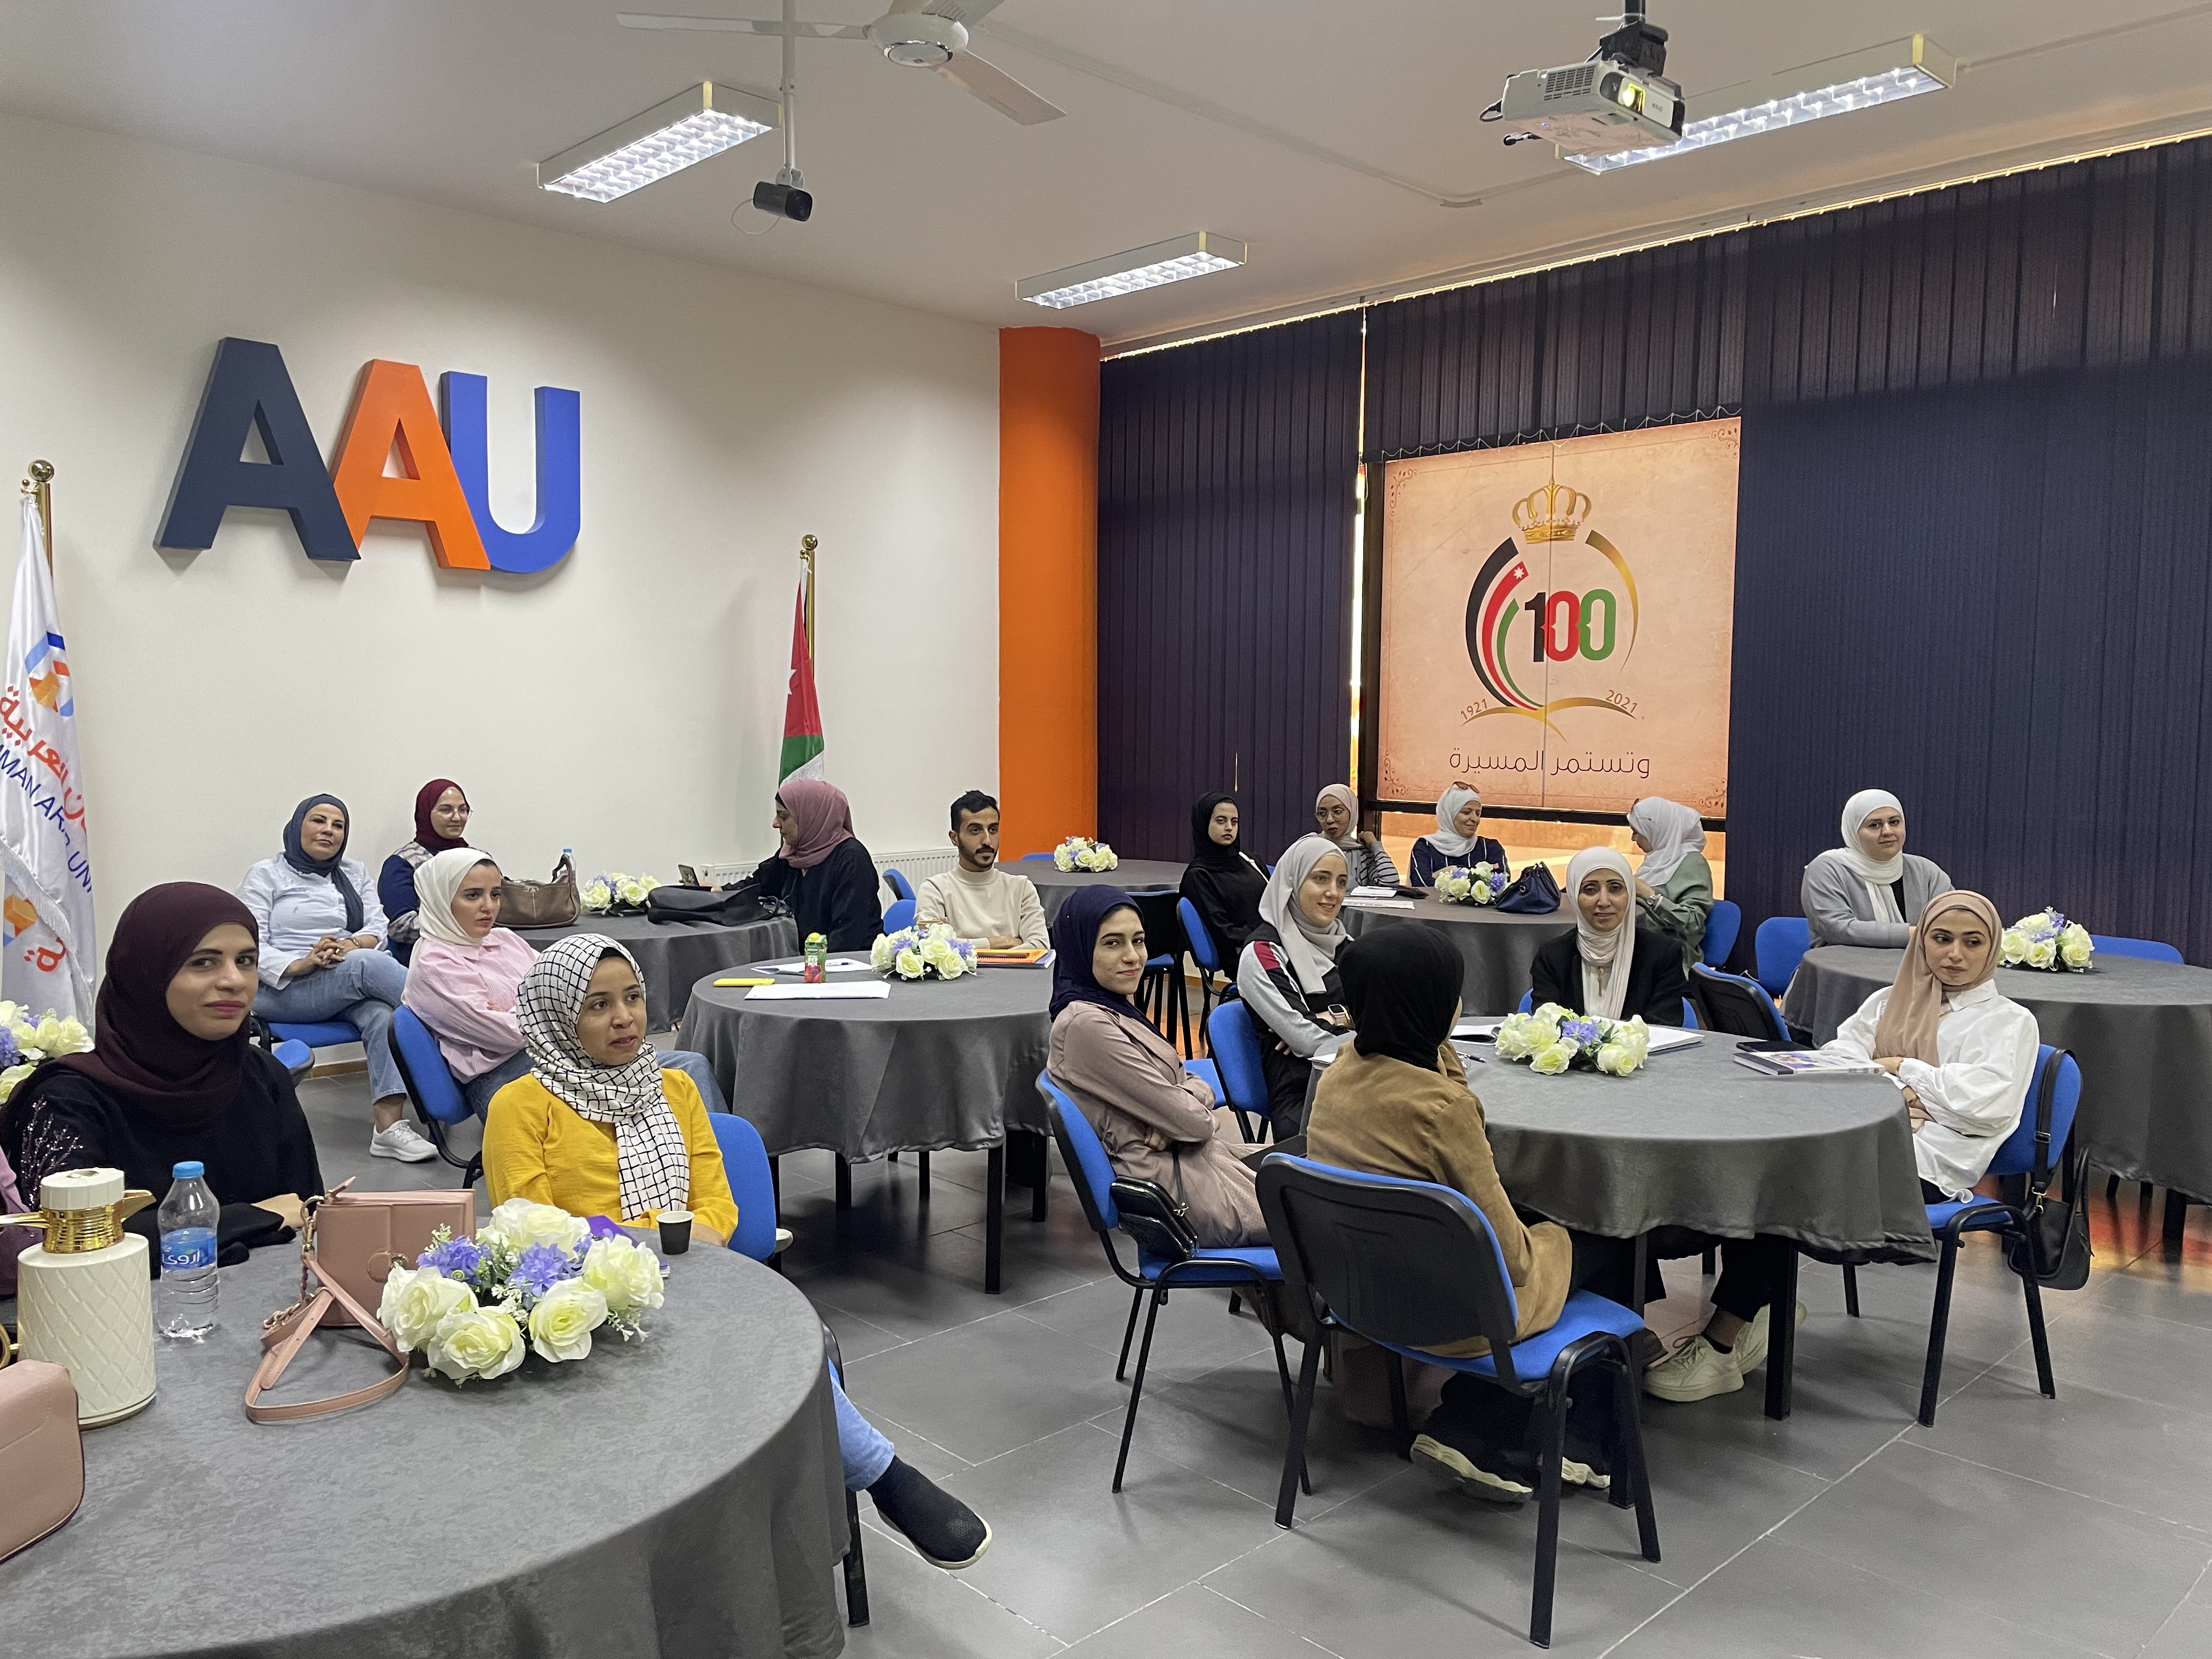 ورشة "التعلم مدى الحياة" لطلبة جامعة عمان العربية1